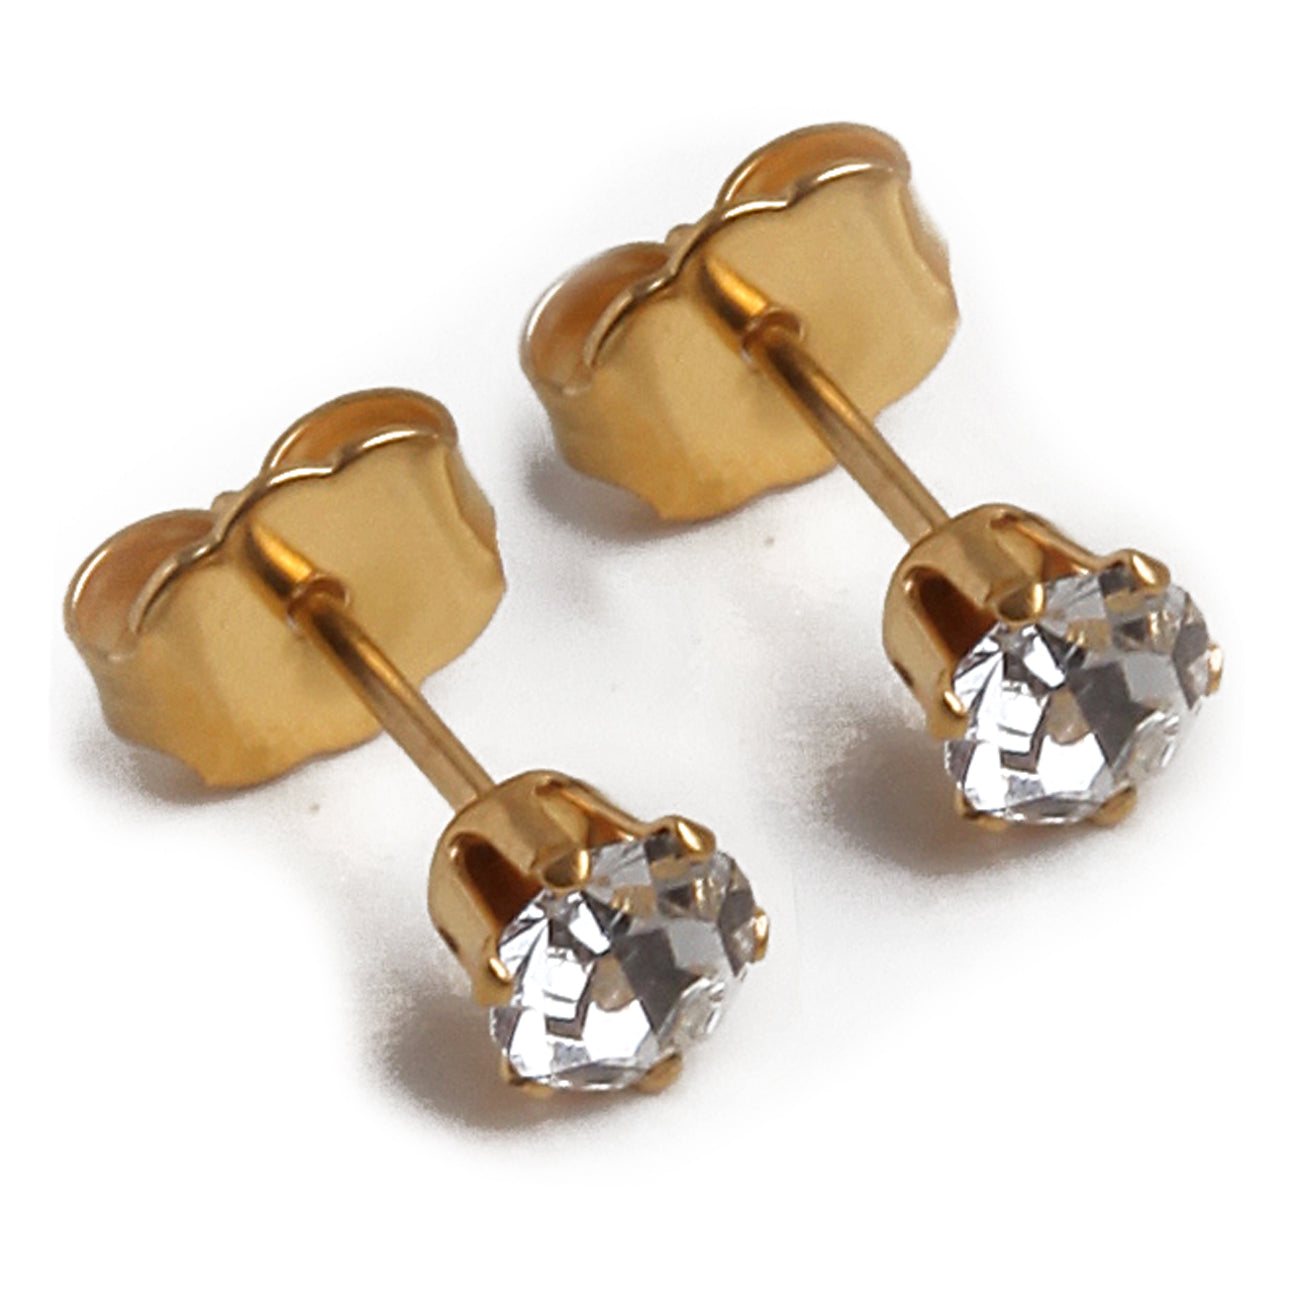 4mm Clear CUBIC ZIRCONIA Earrings in Gold